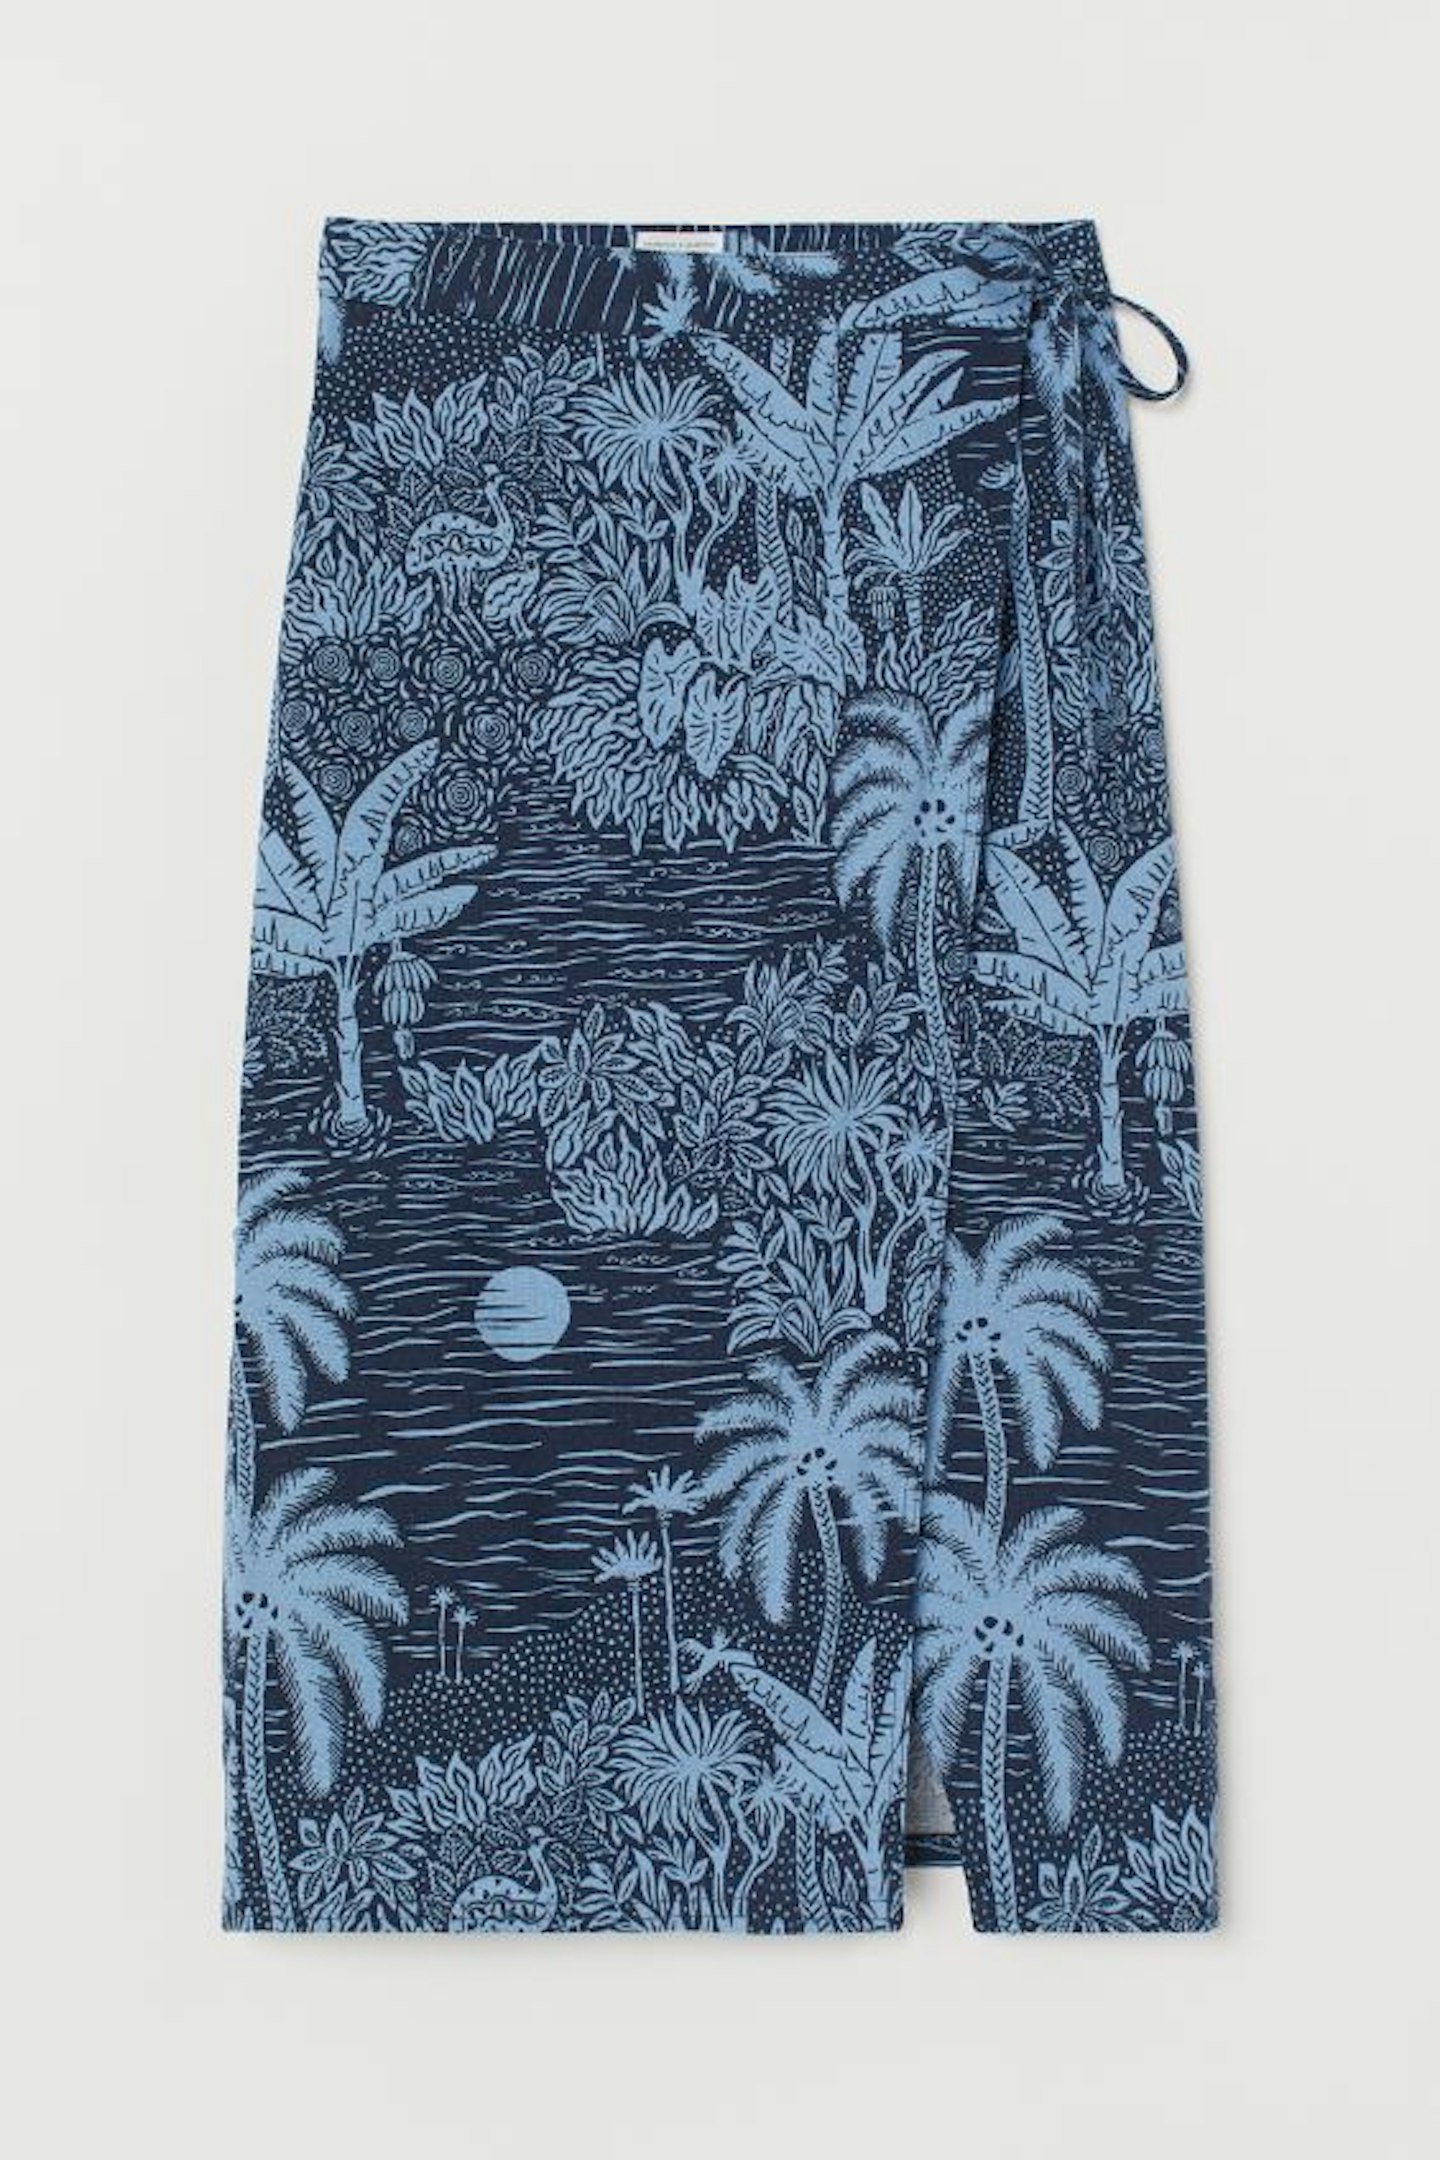 H&M, Linen Blend Wrap Skirt, £19.99